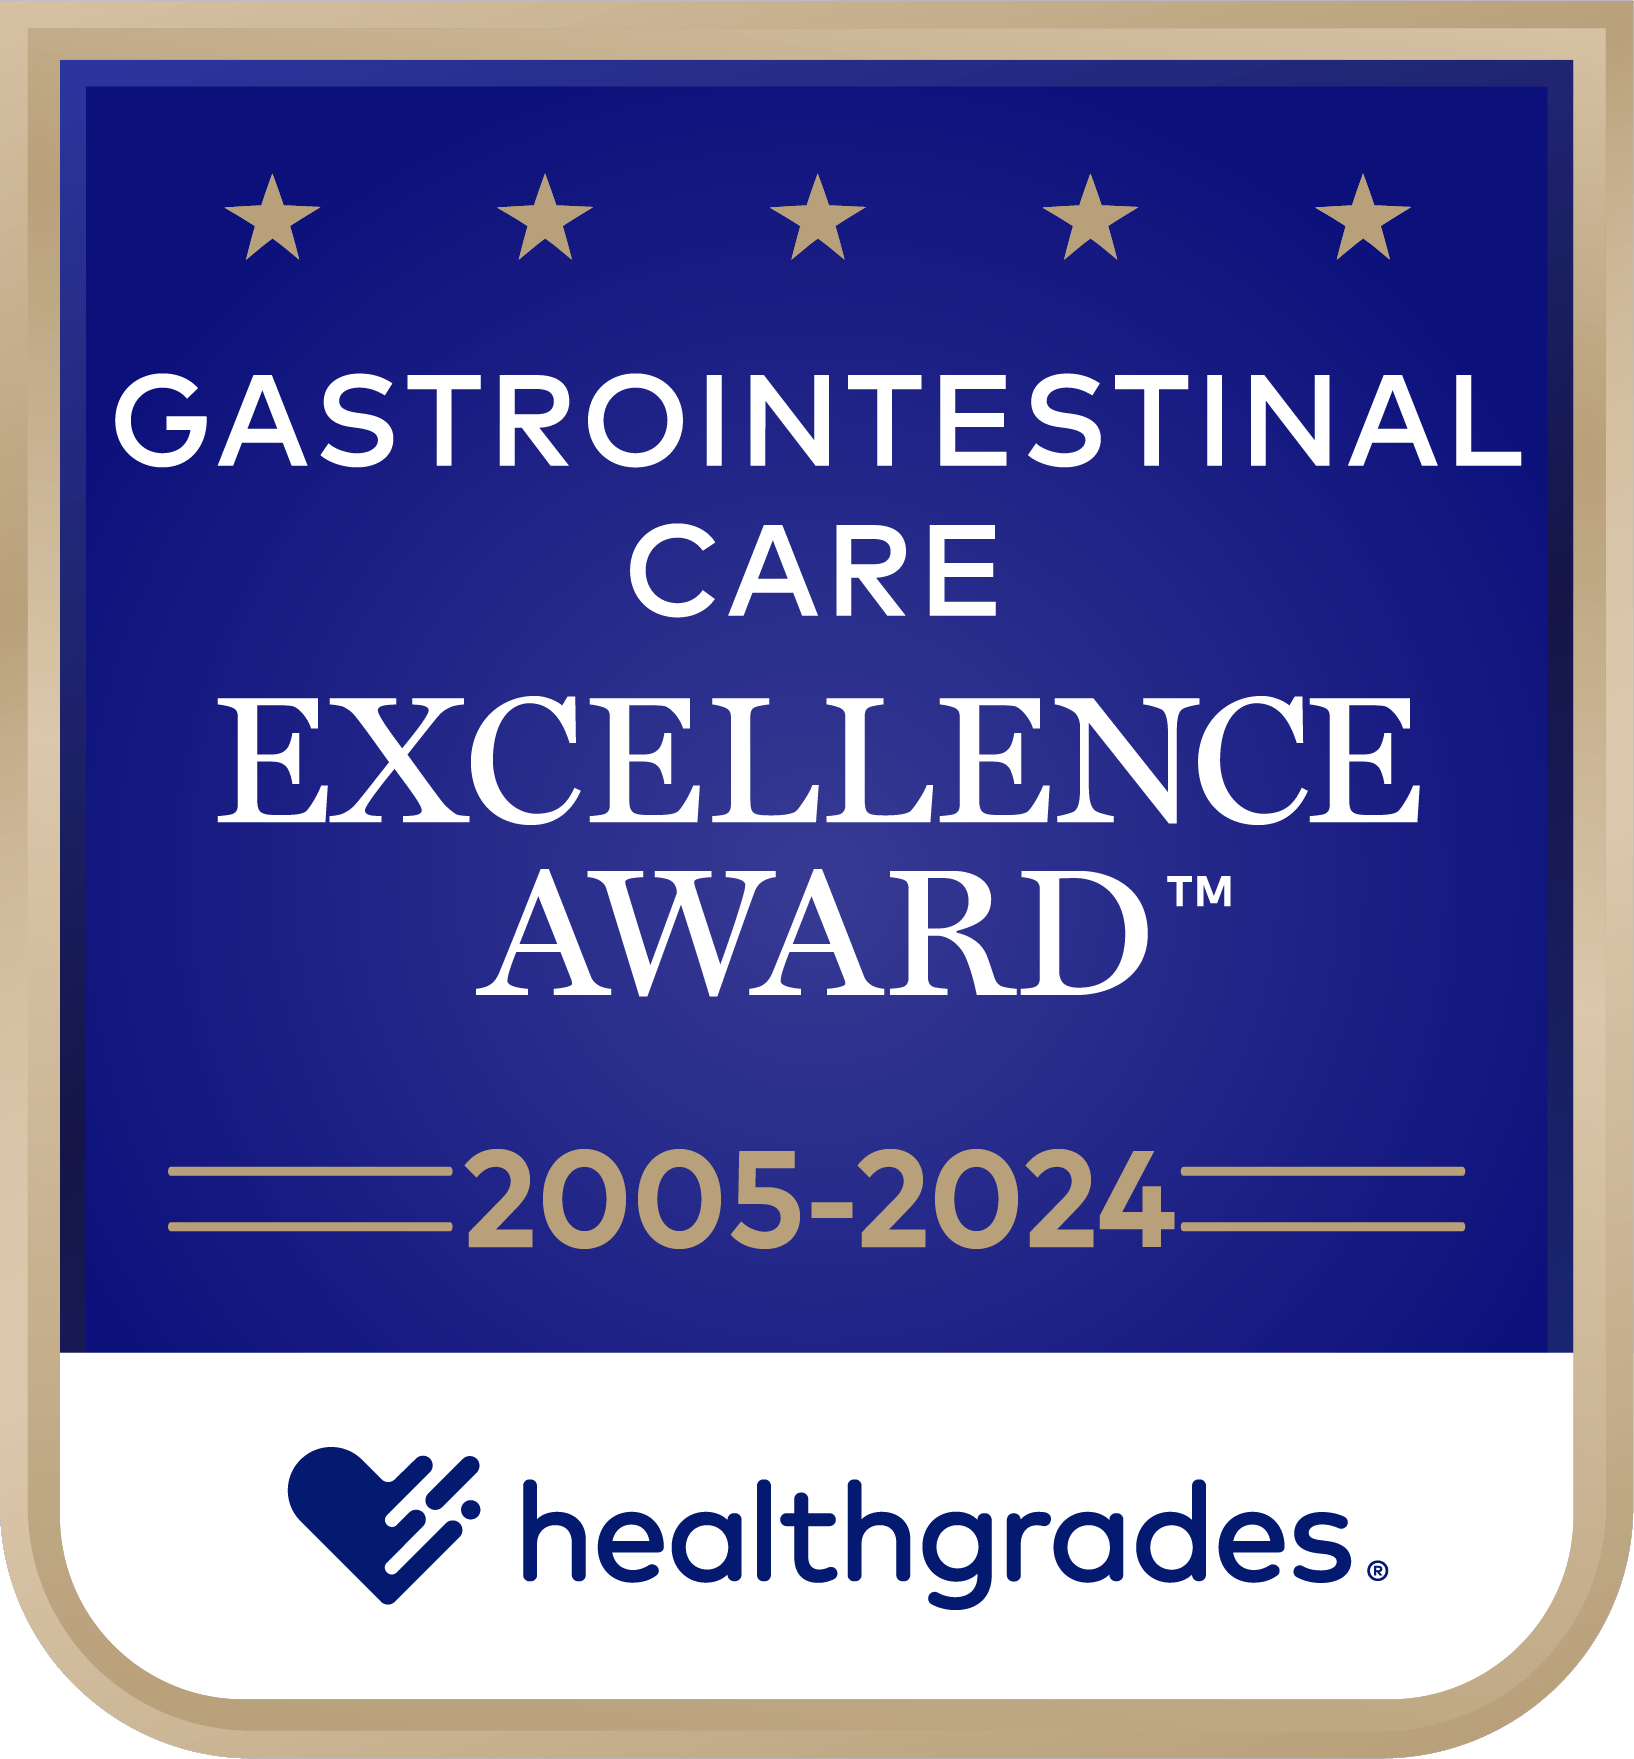 Healthgreades Gastrointestinal care excellence award 2005-2024 badhe